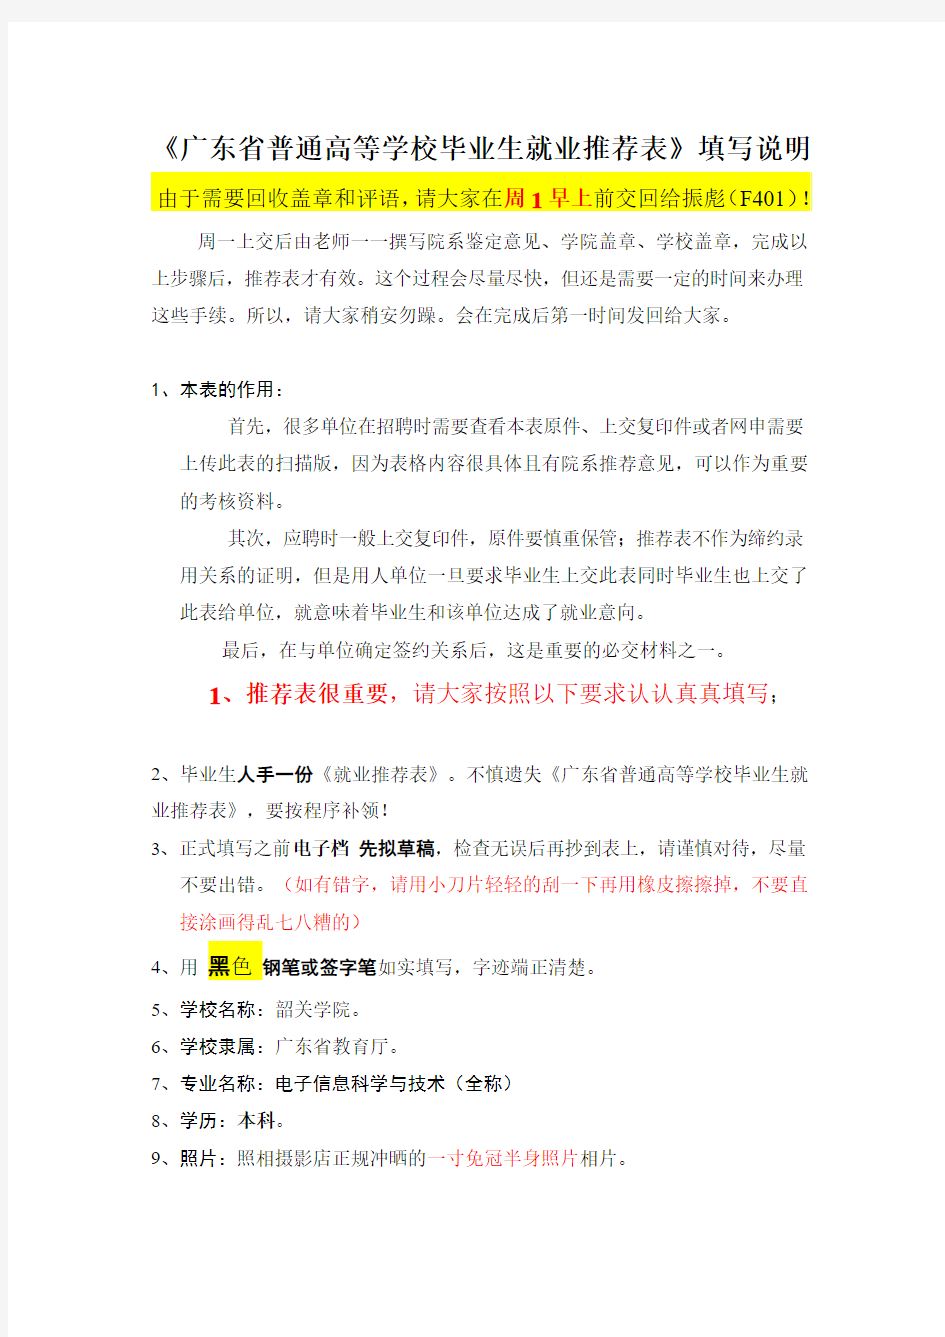 广东省高校毕业生就业推荐表填写规范